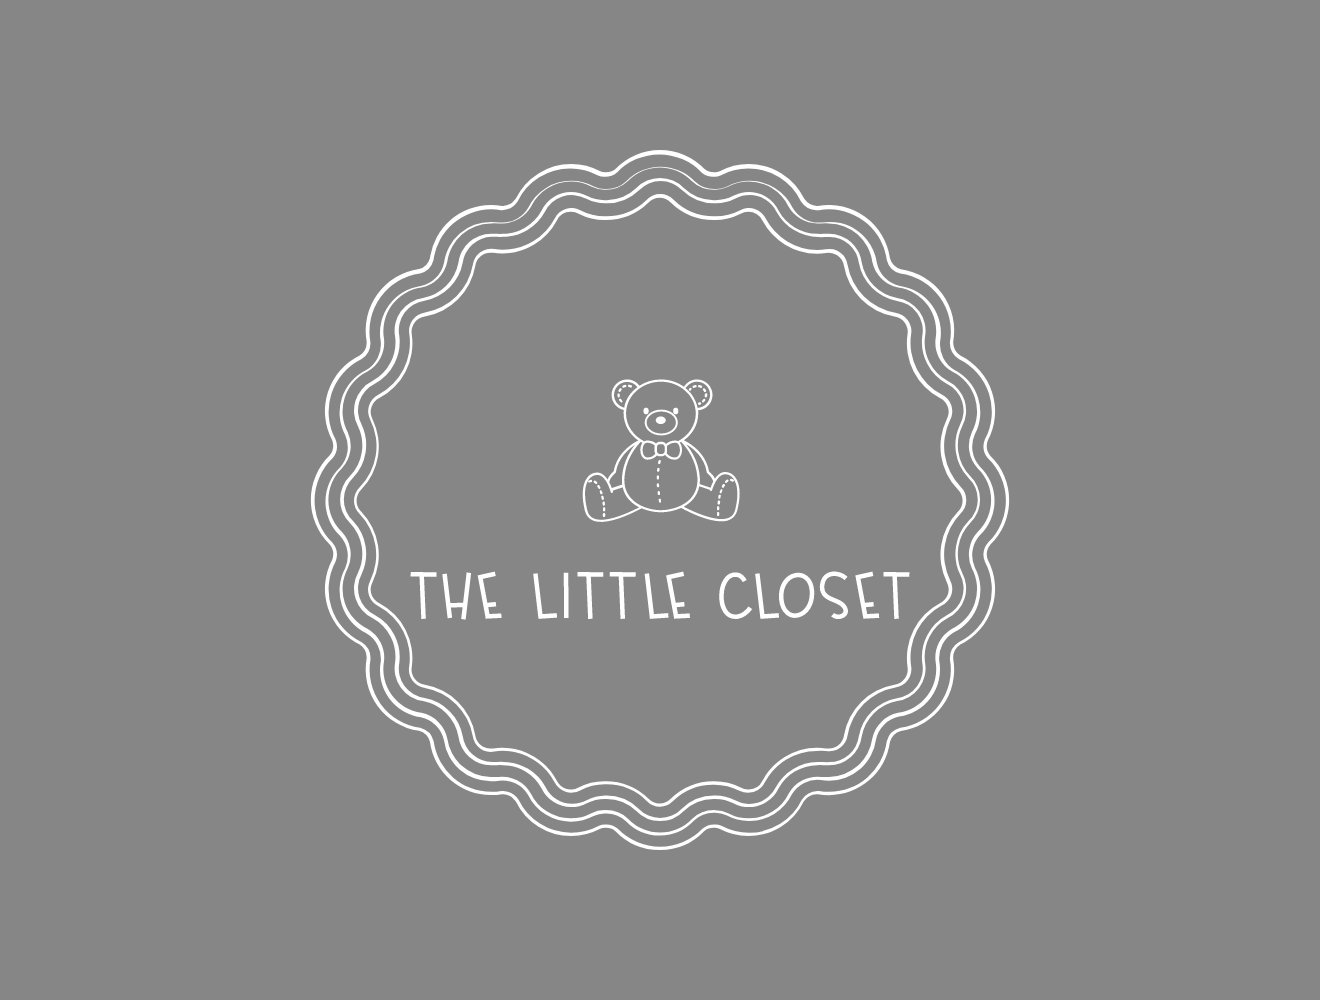 The Little Closet